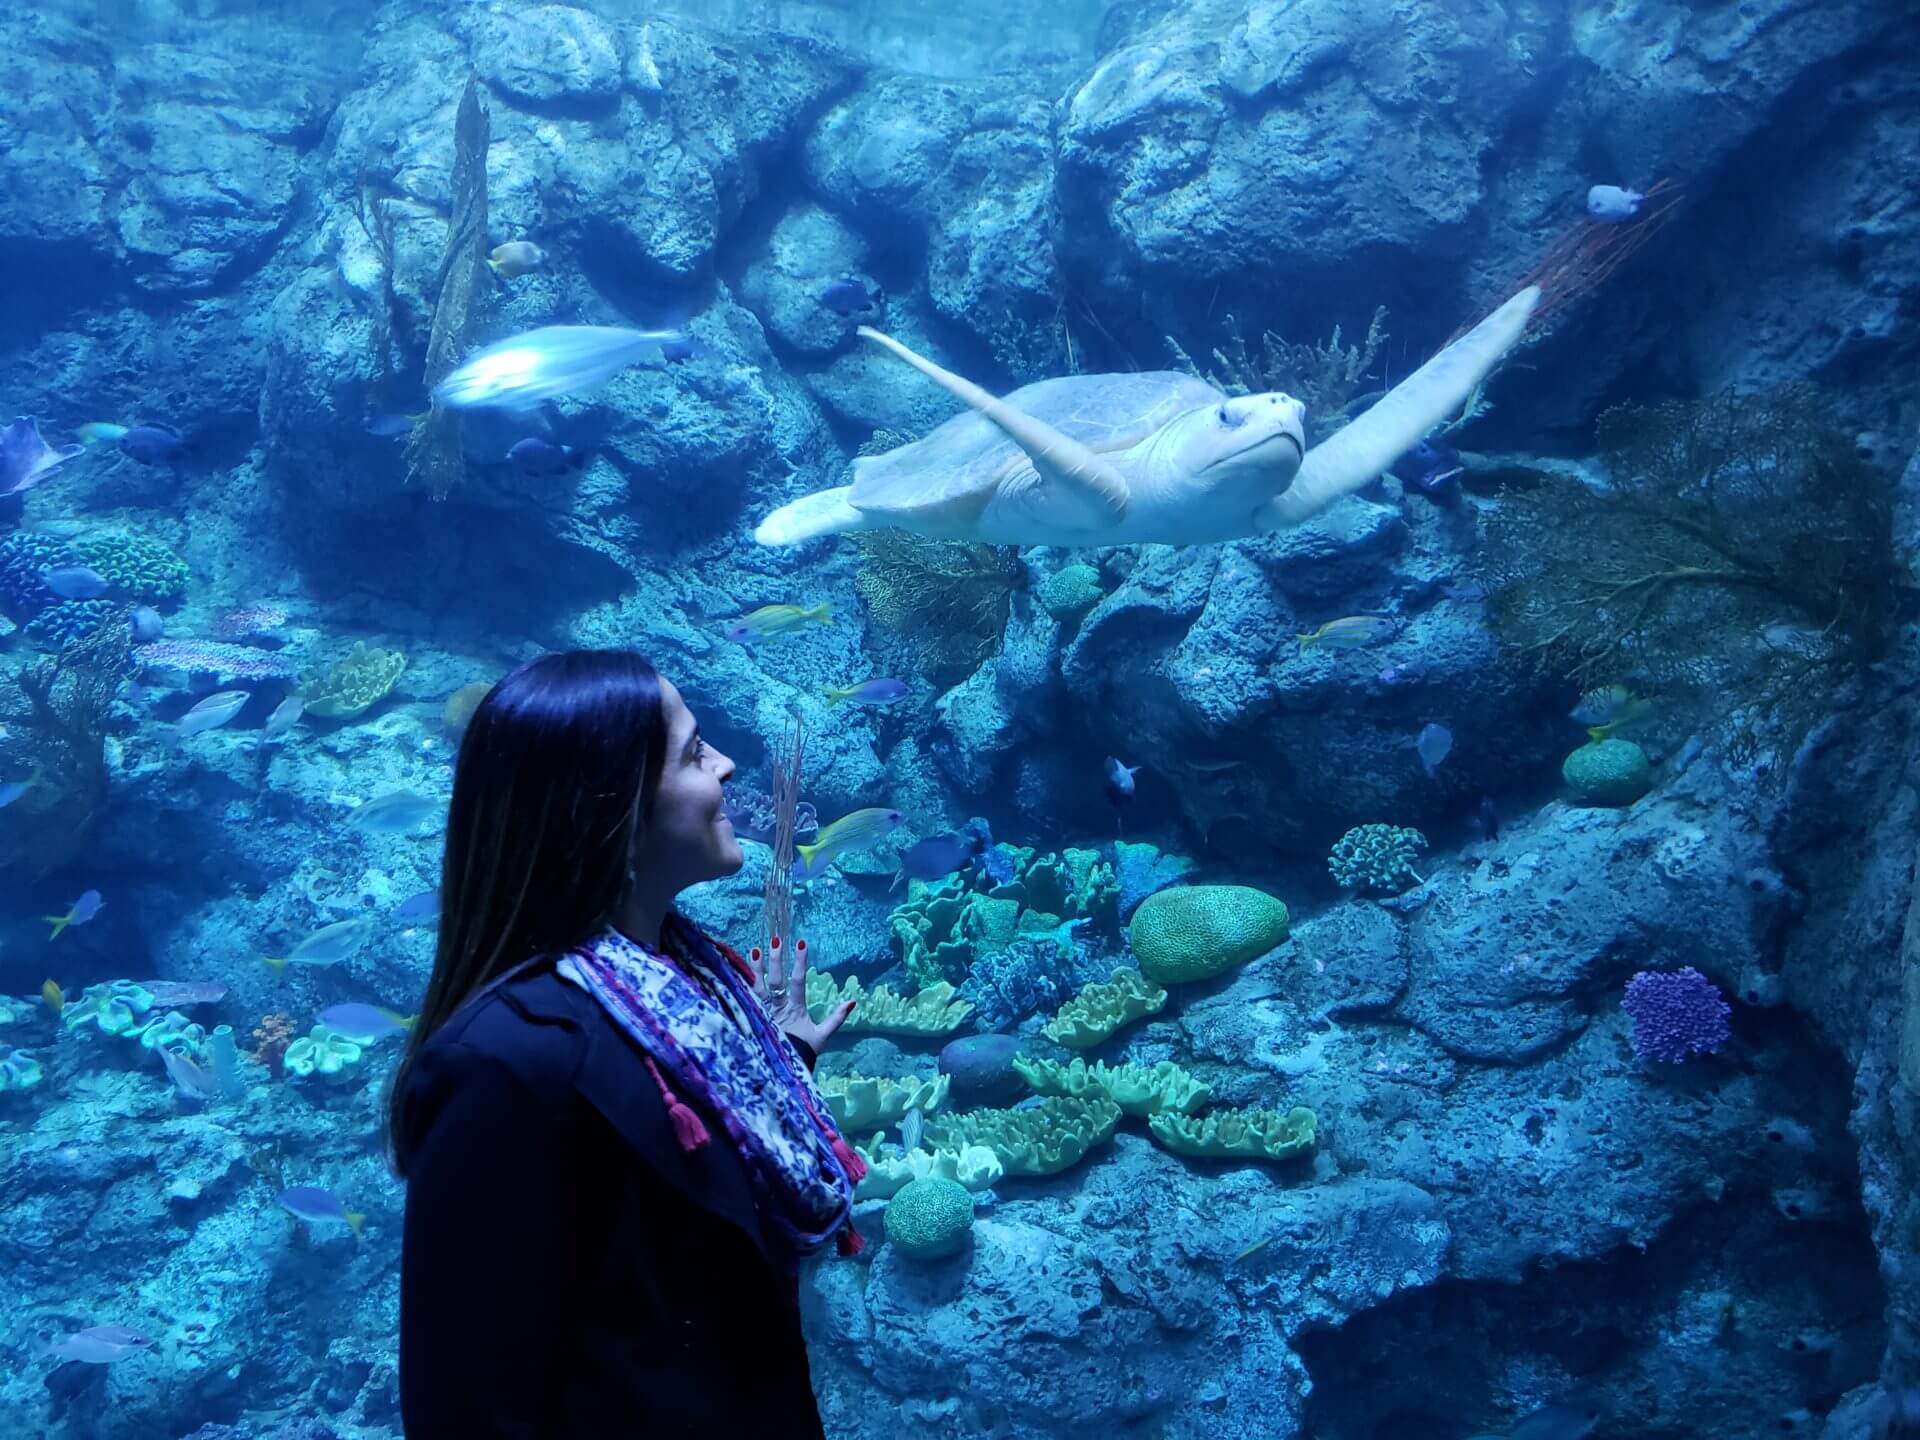 Visit to Aquarium of the Pacific - USC Viterbi